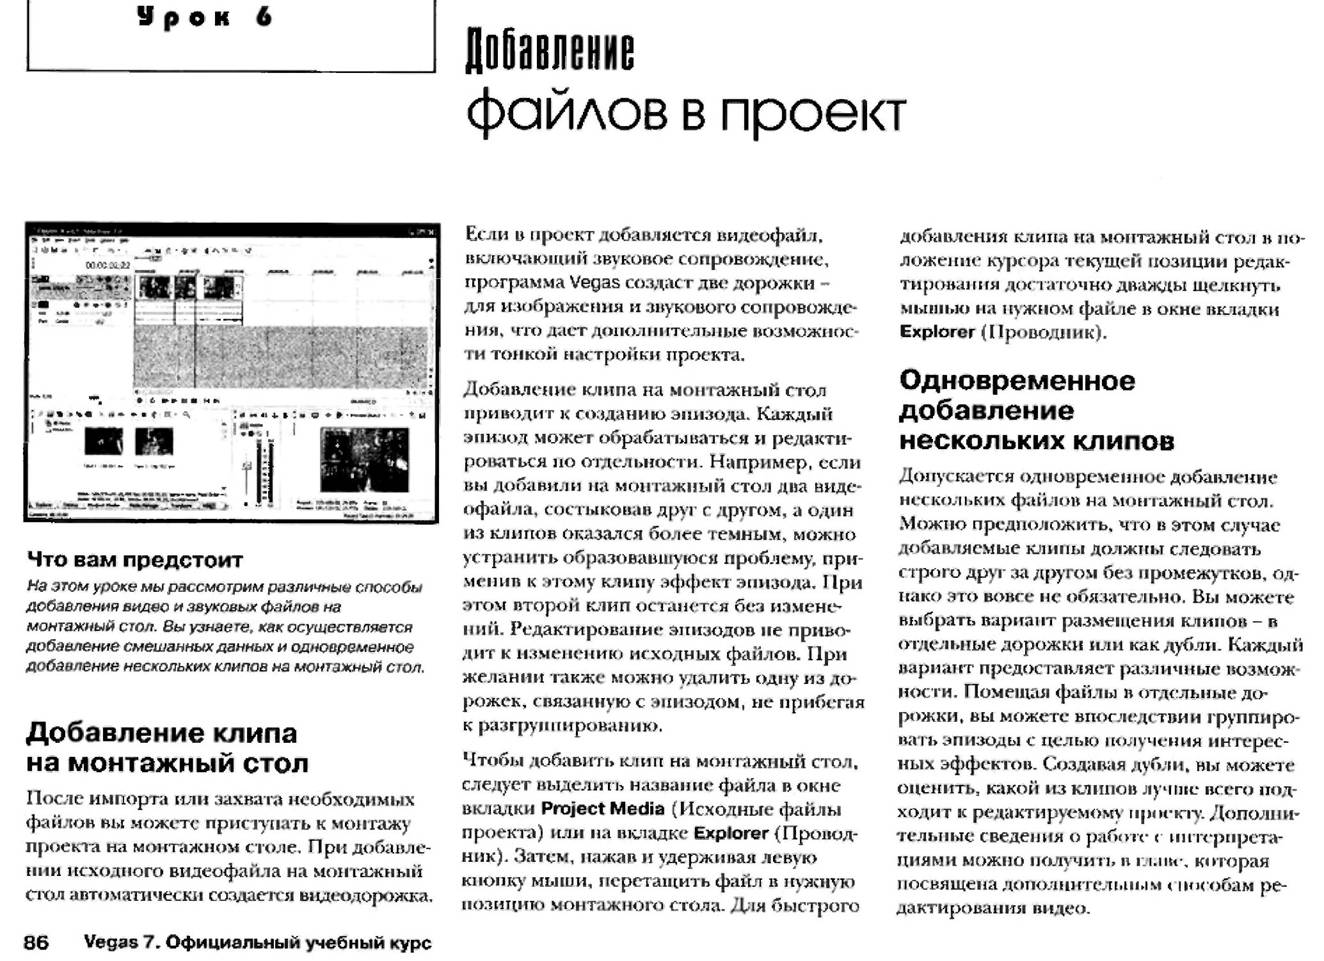 http://redaktori-uroki.3dn.ru/_ph/12/44764027.jpg